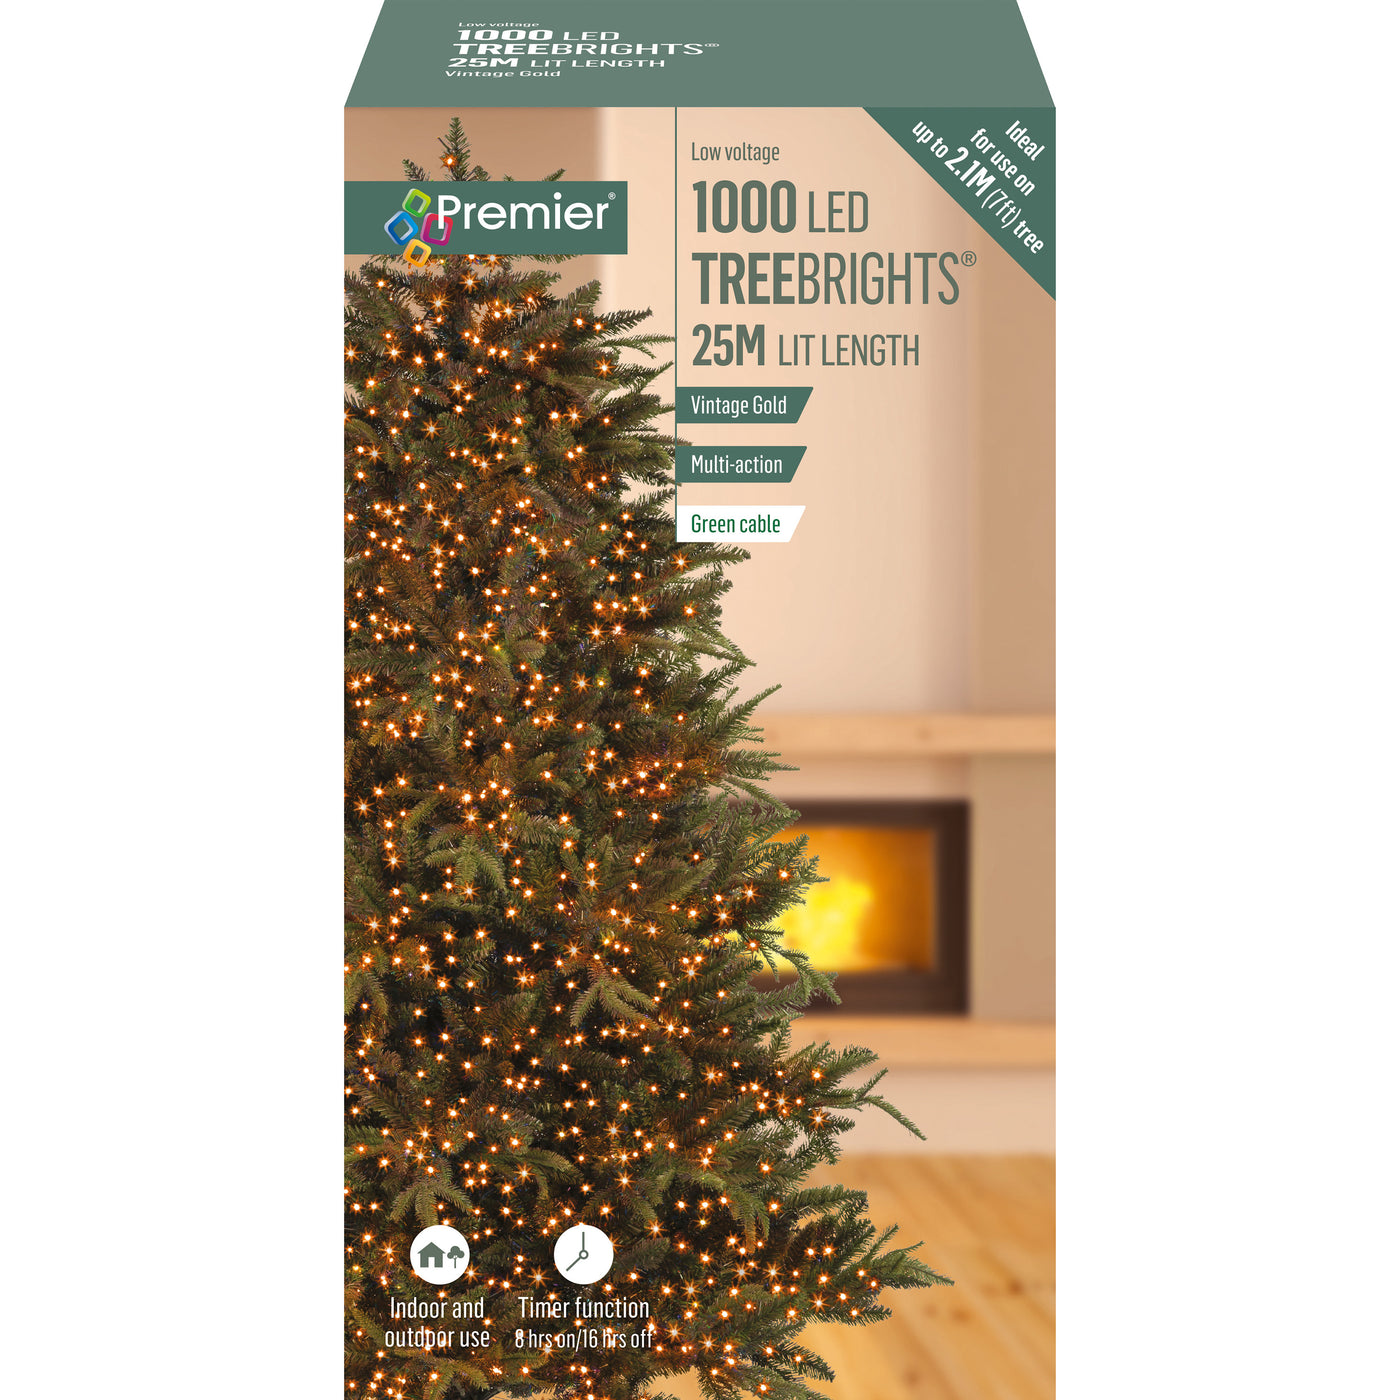 1000 Multi Action LED TreeBrights Christmas Tree Lights - Vintage Gold